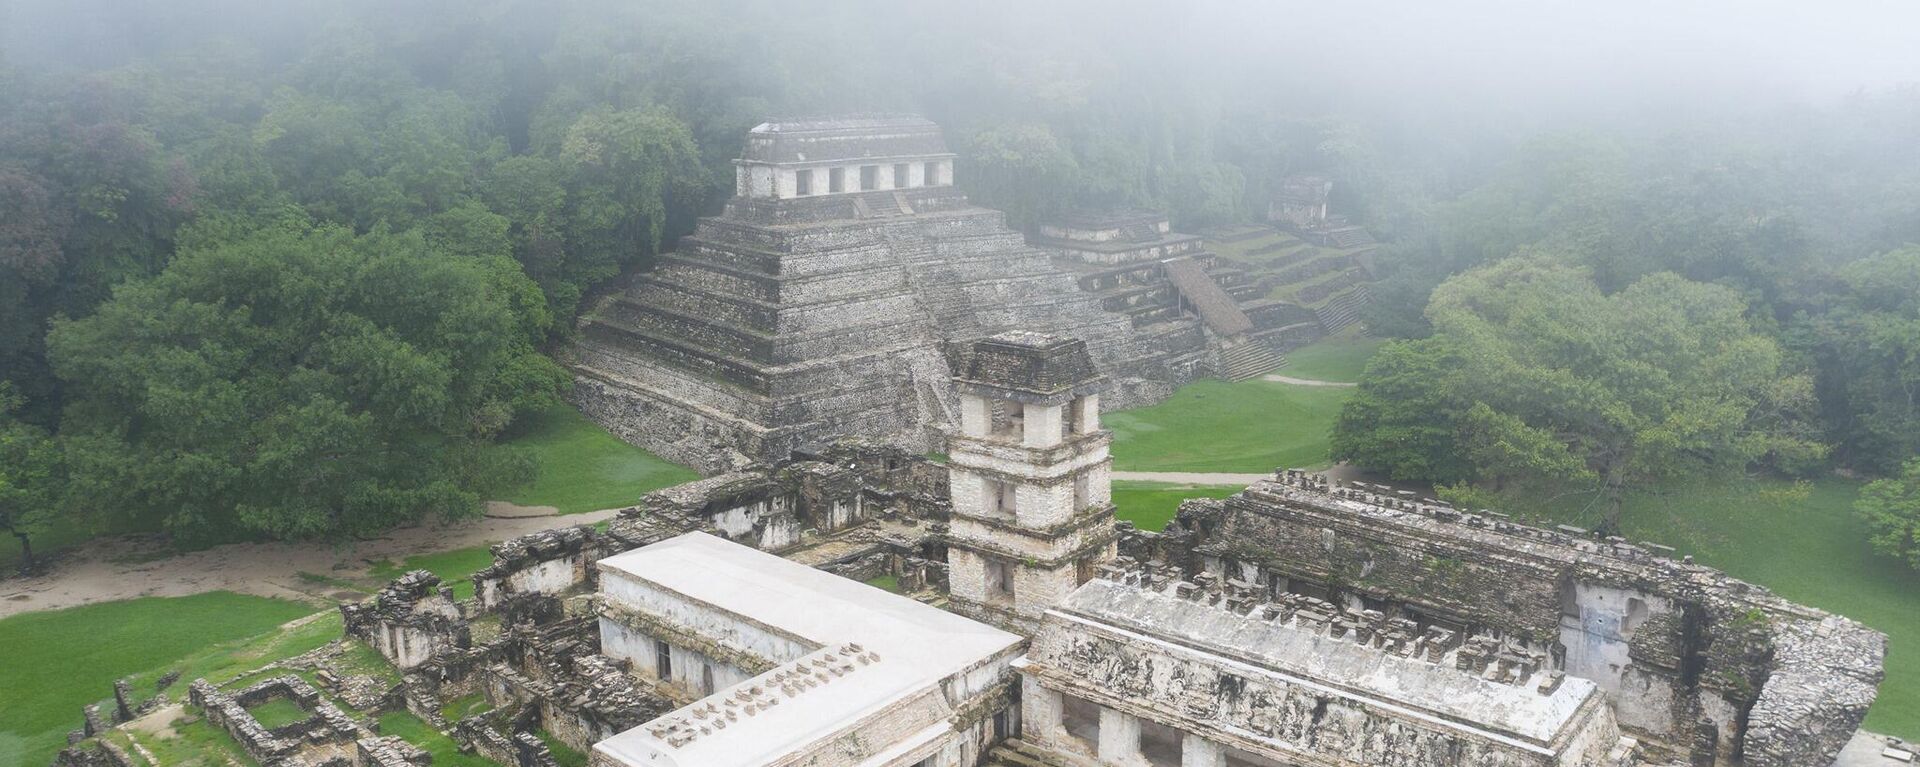 La ciudad maya de Palenque, ubicada en la región donde se desarrolla el Tren Maya. - Sputnik Mundo, 1920, 20.12.2021